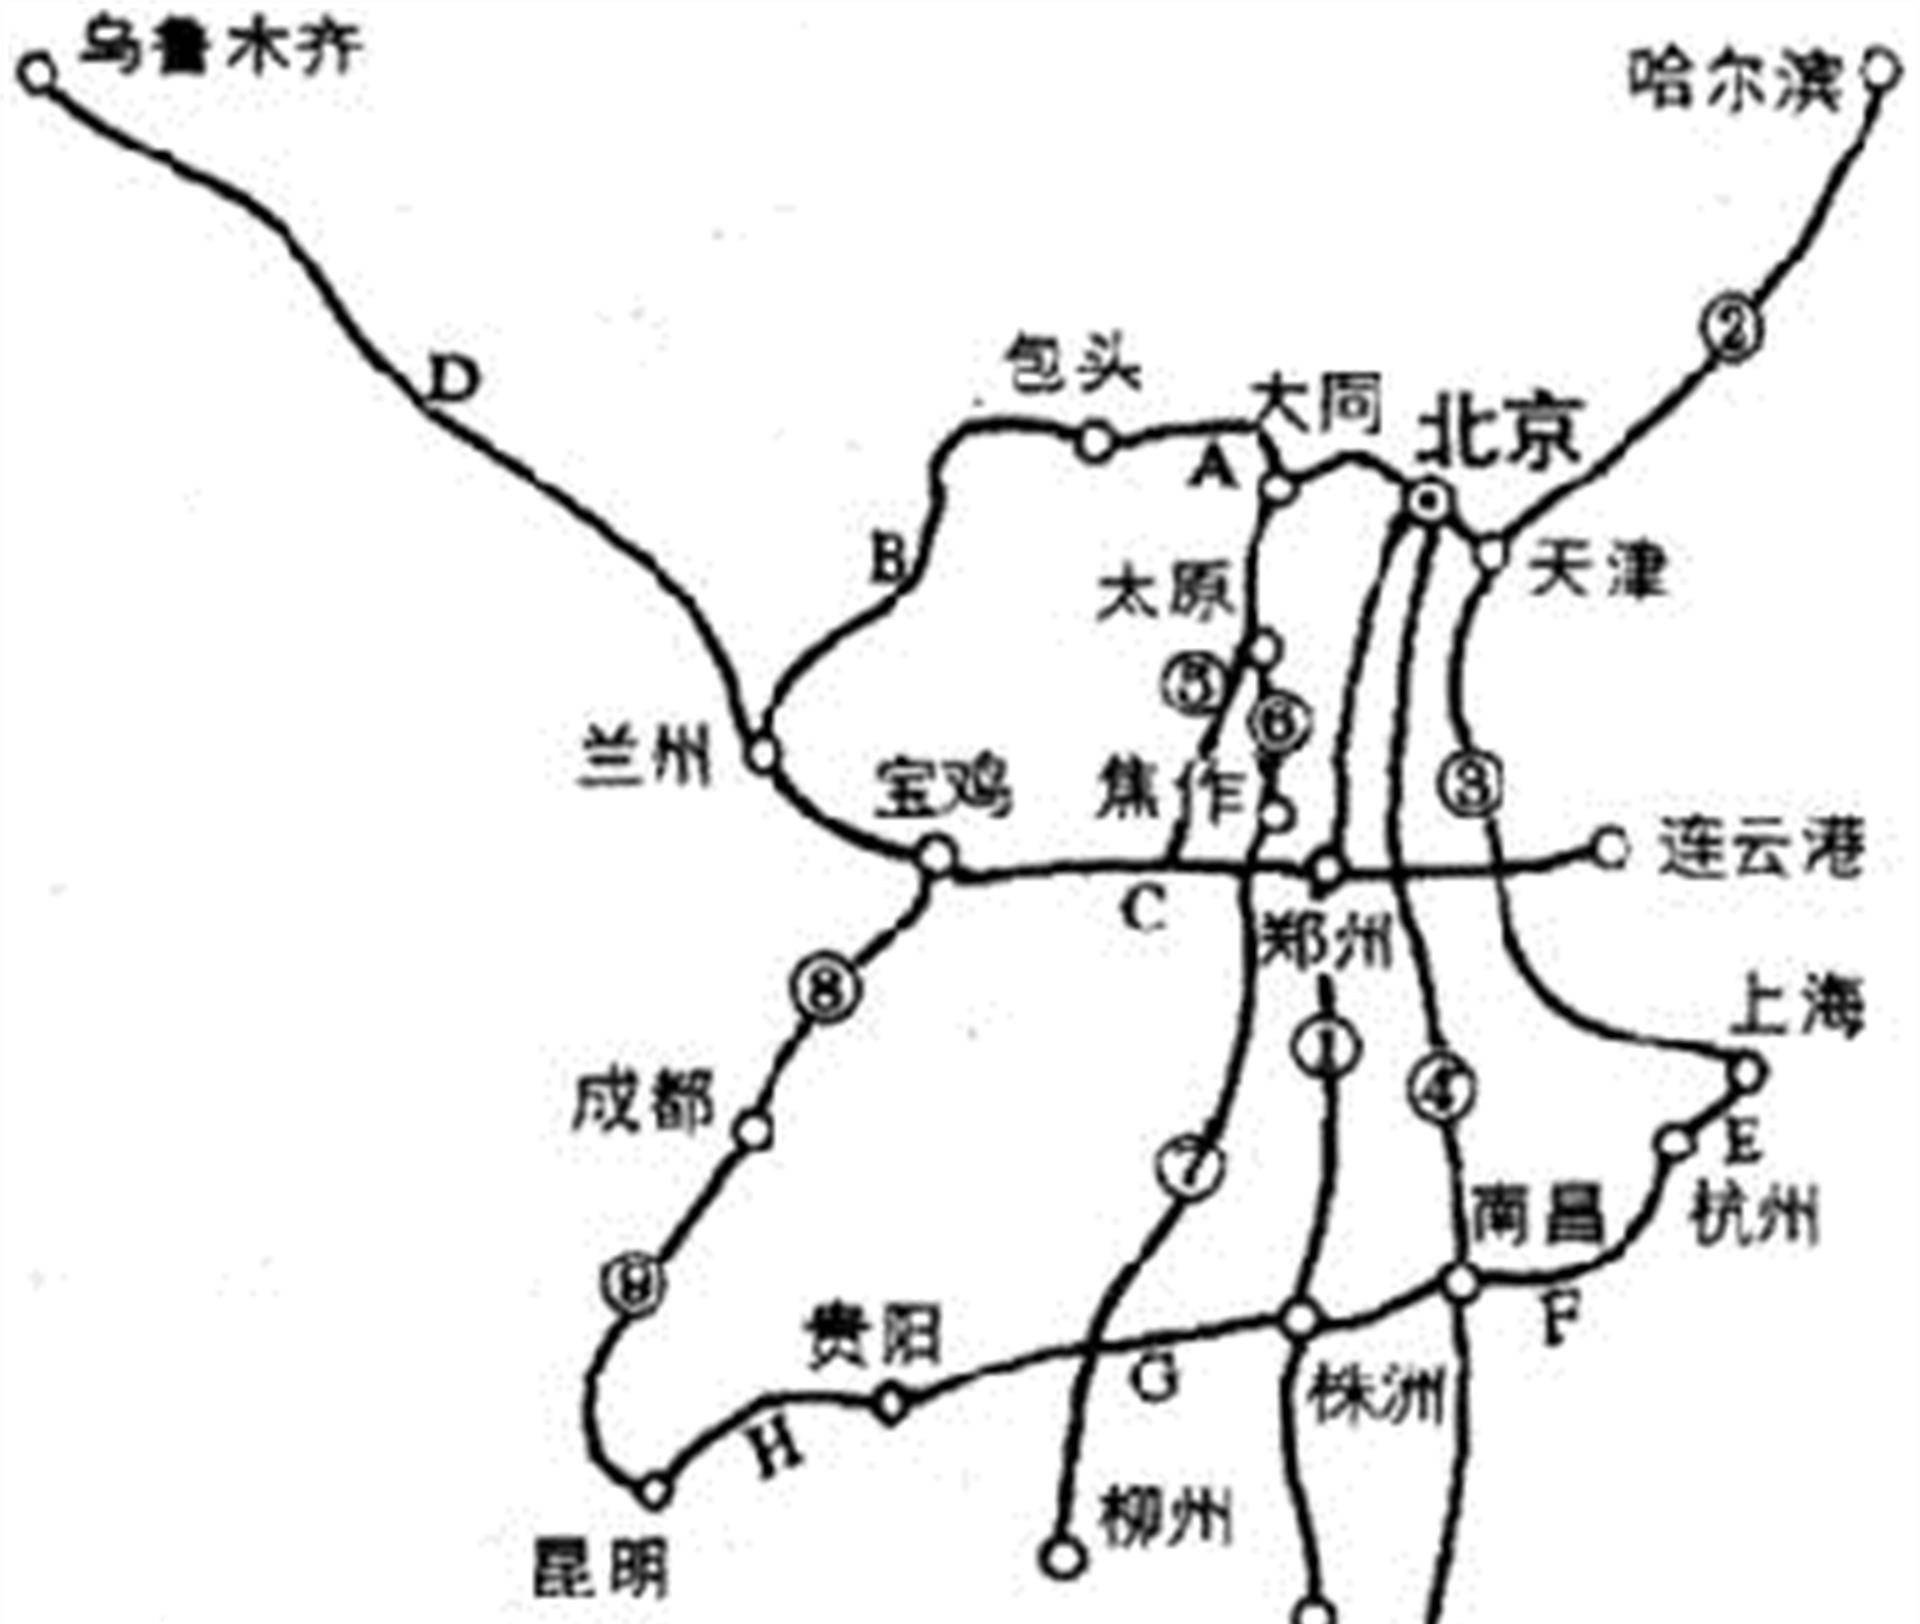 京九铁路修建工程已定,为什么又绕道信阳?这归功于八位老将军